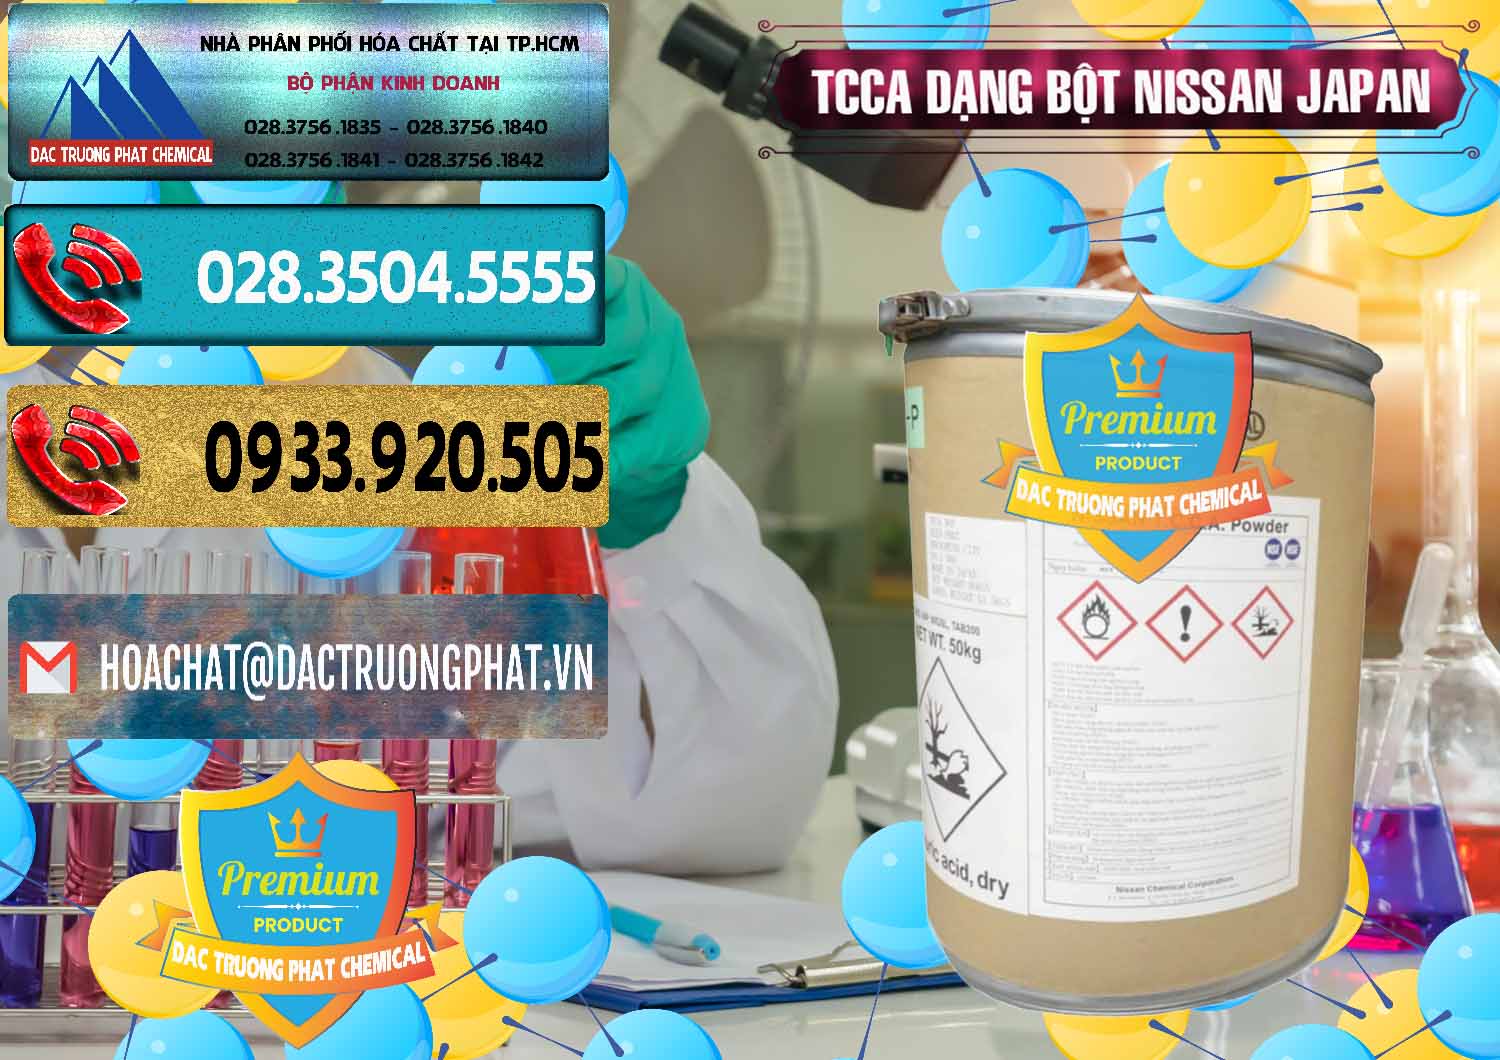 Cty bán & phân phối TCCA - Acid Trichloroisocyanuric 90% Dạng Bột Nissan Nhật Bản Japan - 0375 - Nơi bán & cung cấp hóa chất tại TP.HCM - hoachatdetnhuom.com